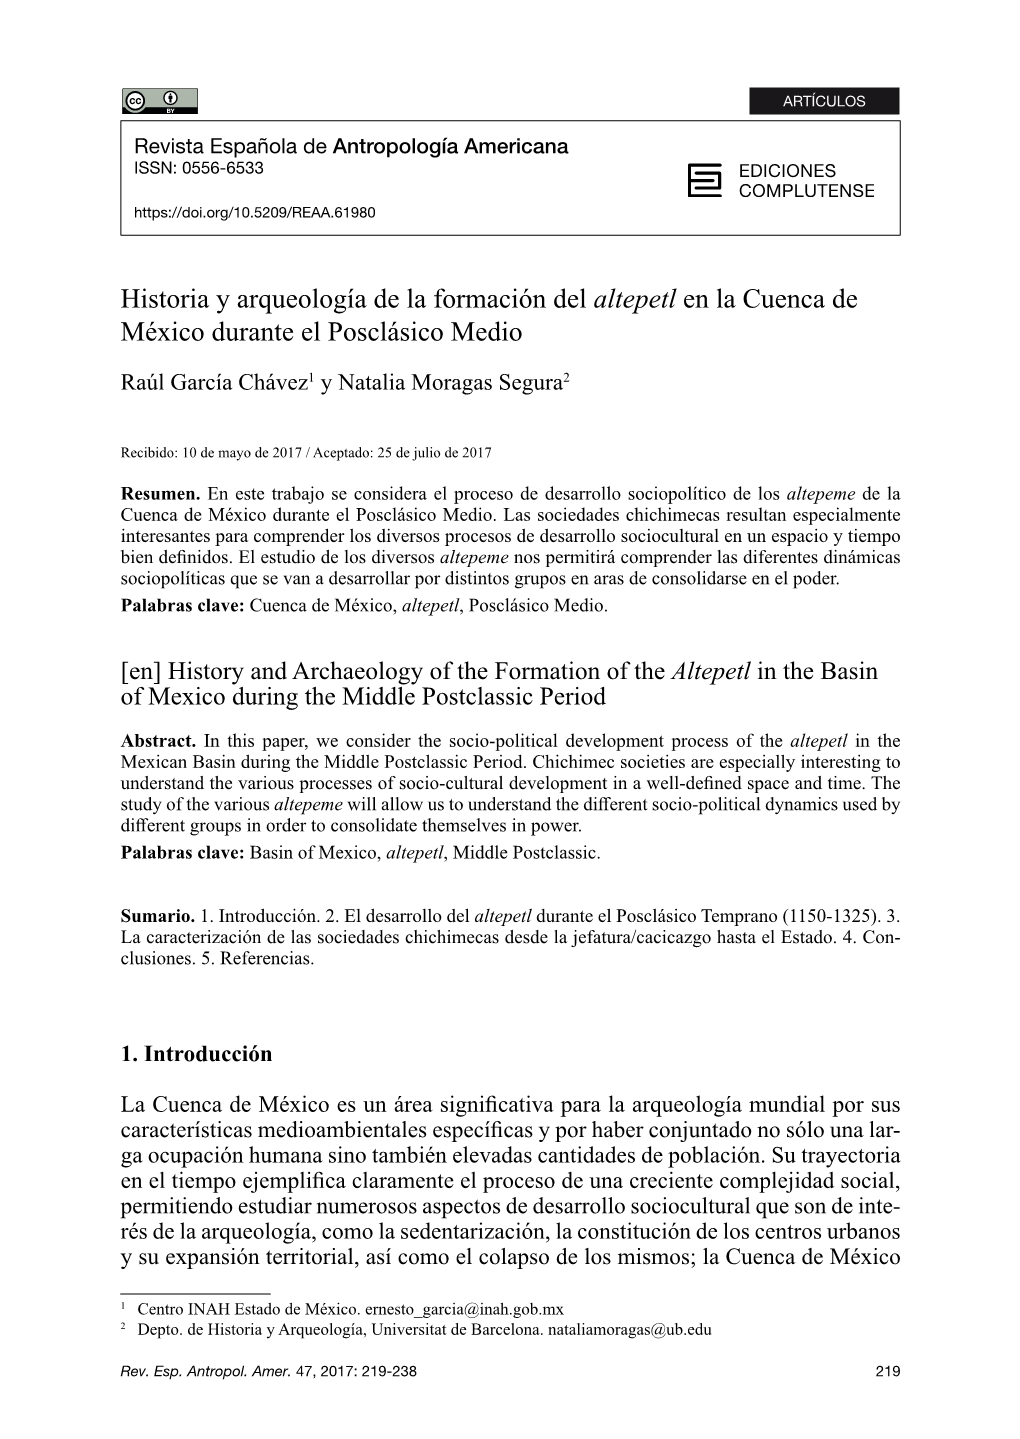 Historia Y Arqueología De La Formación Del Altepetl En La Cuenca De México Durante El Posclásico Medio